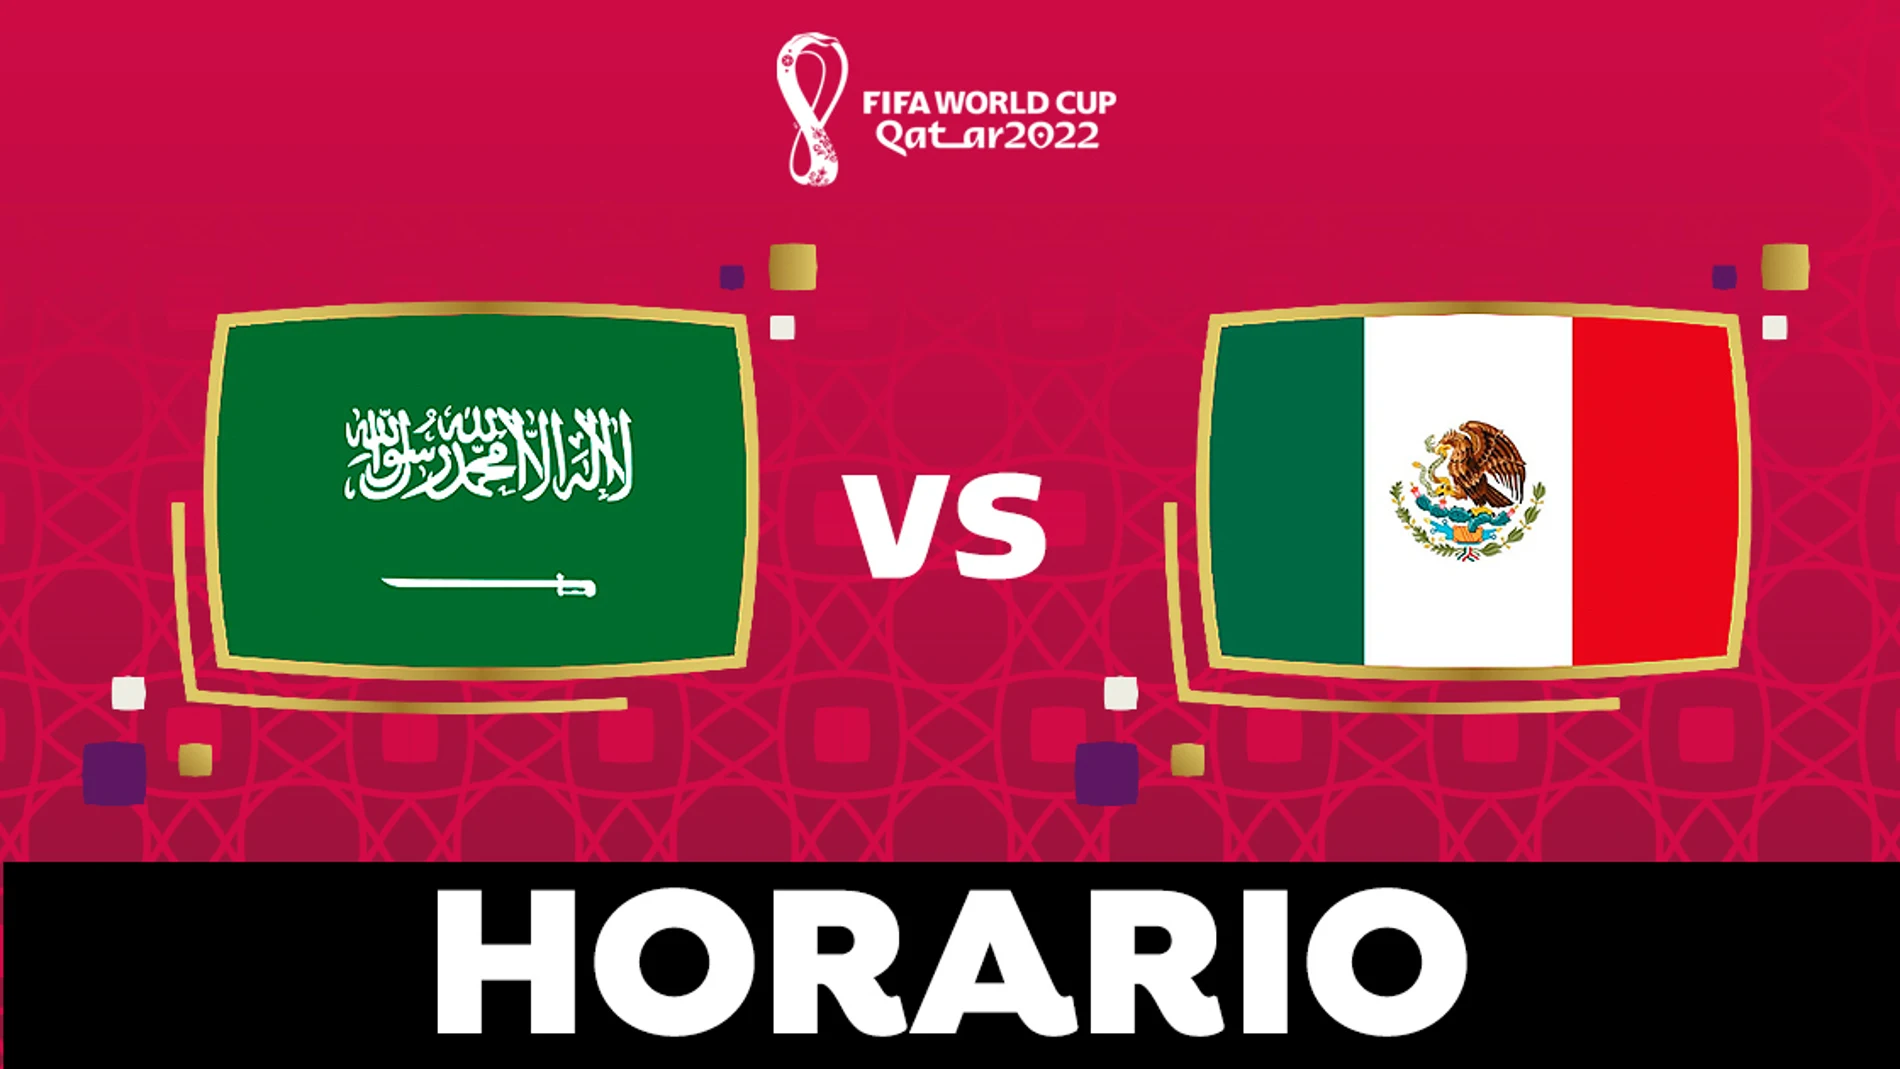 Arabia Saudí - Horario, alineaciones y ver el del Grupo D del Mundial de